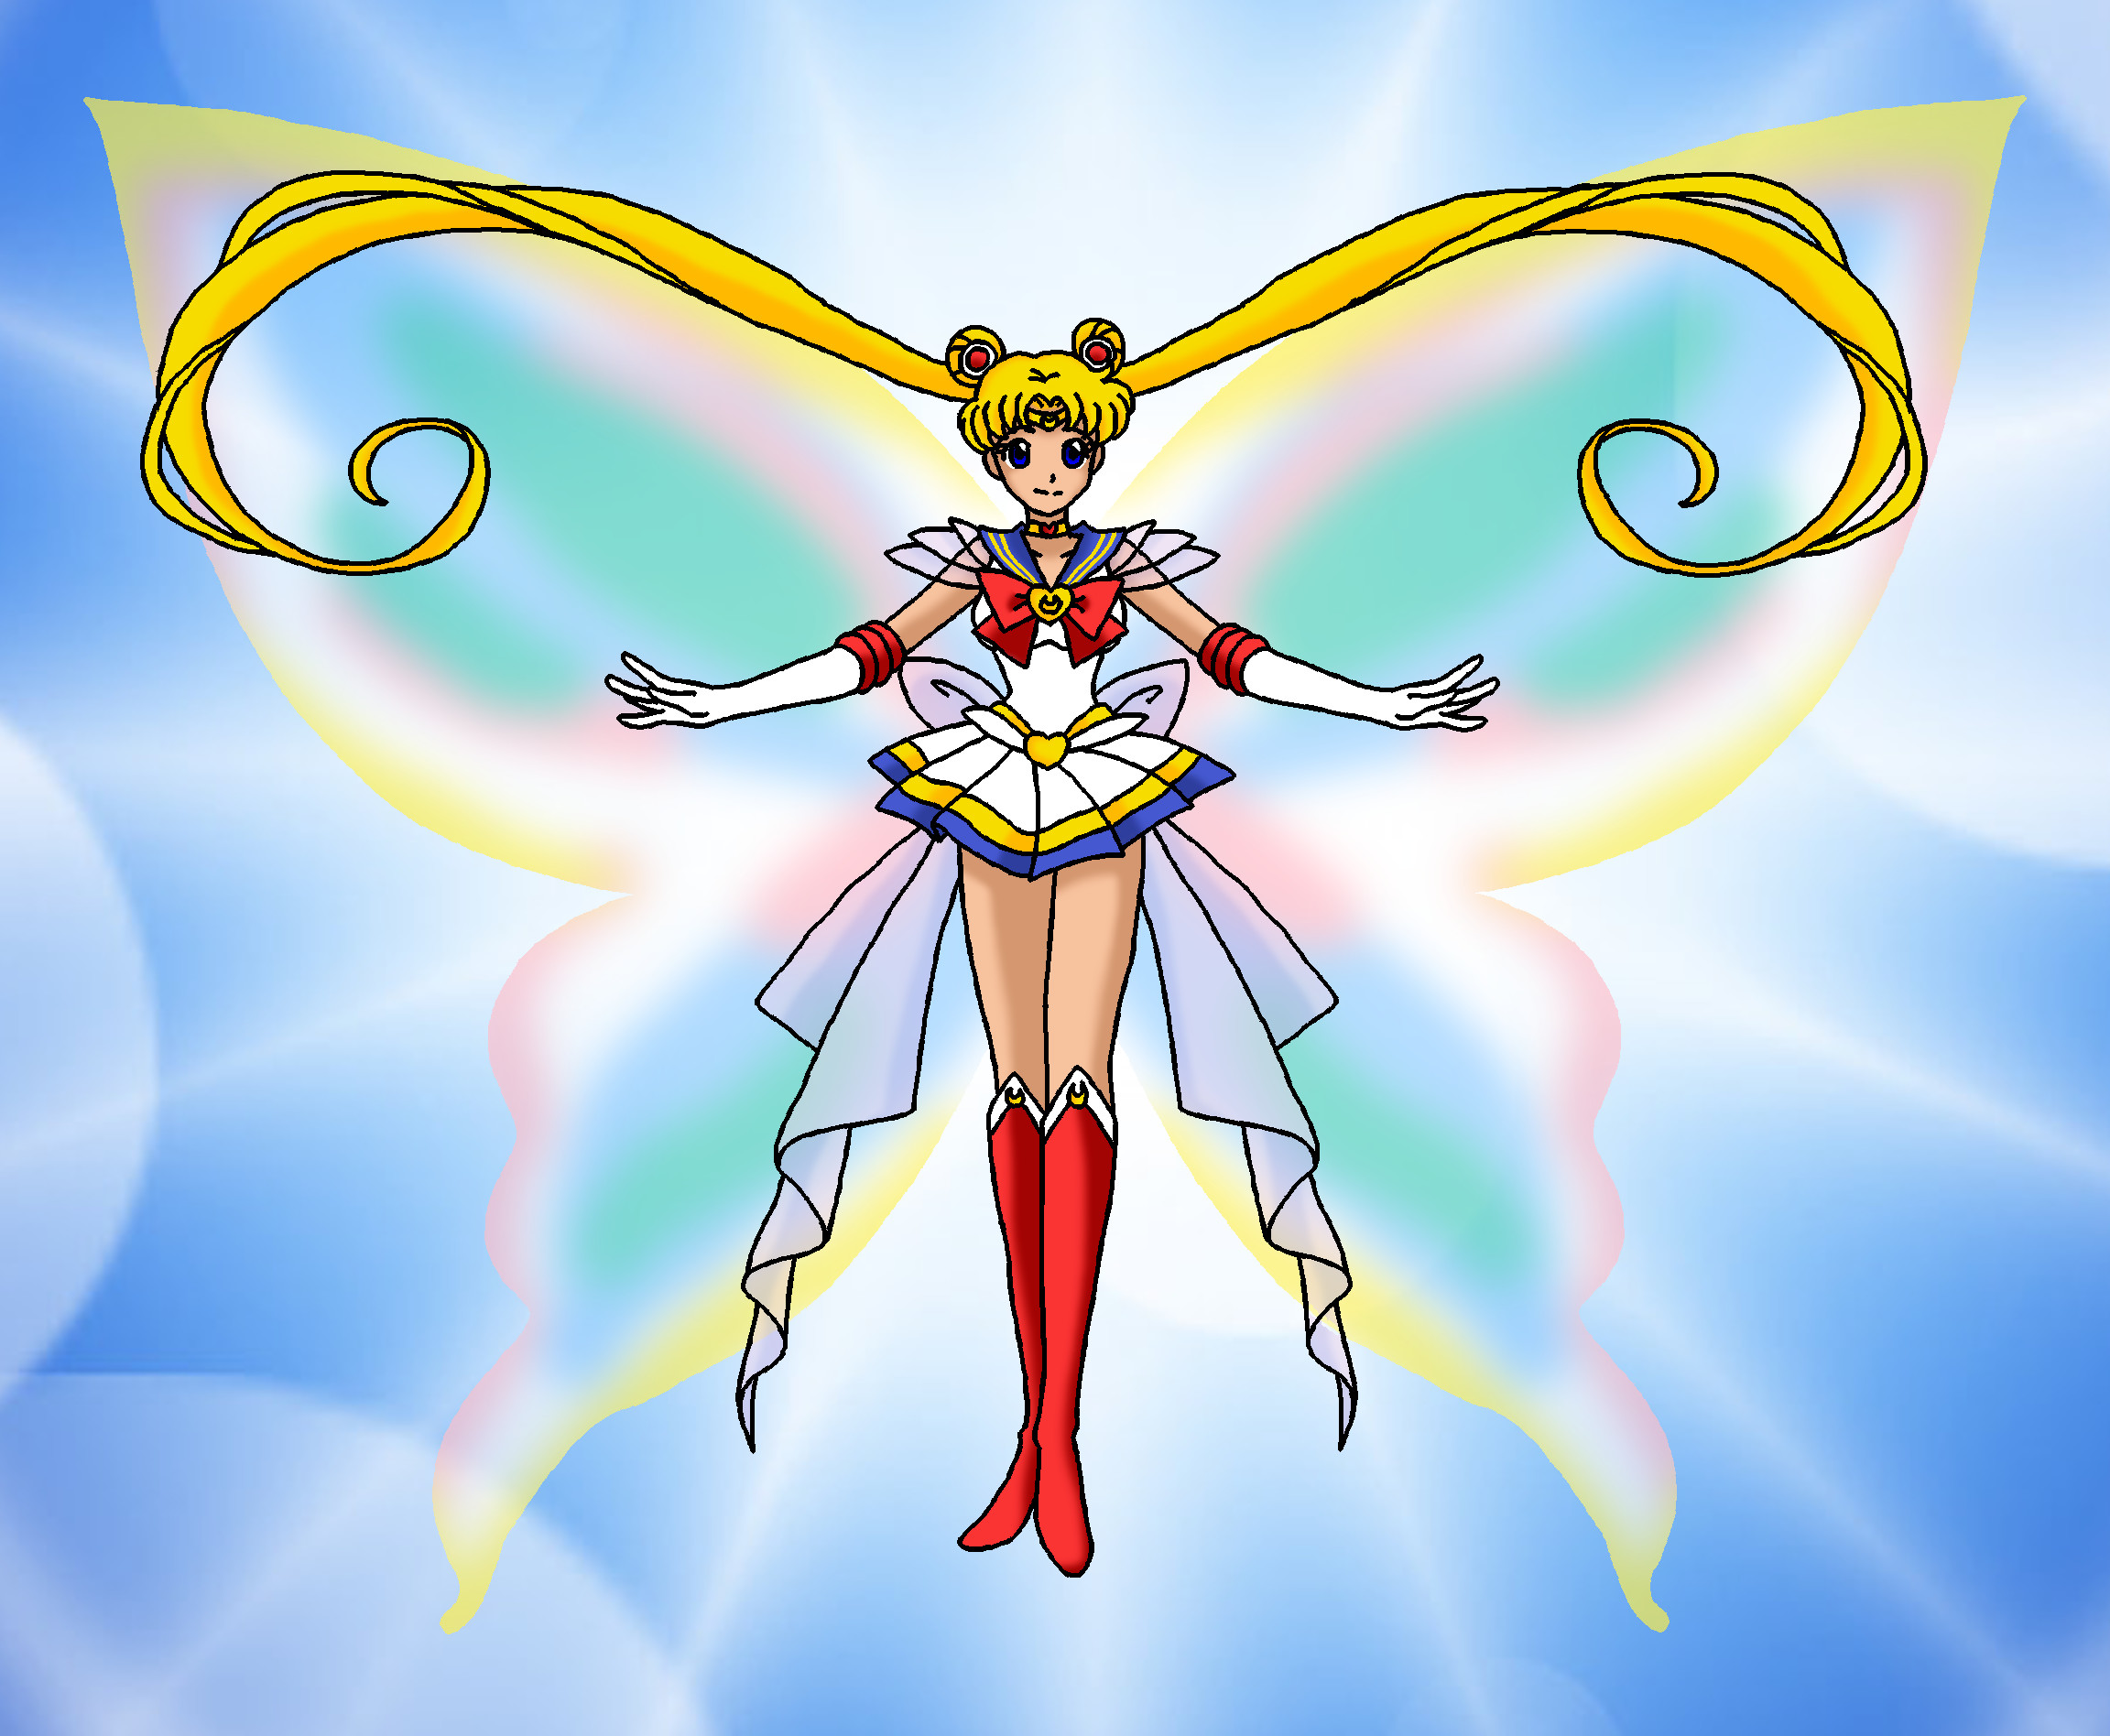 Село мун. Сейлормун. Сейлормун Sailor Moon. Сейлормун перевоплощение.